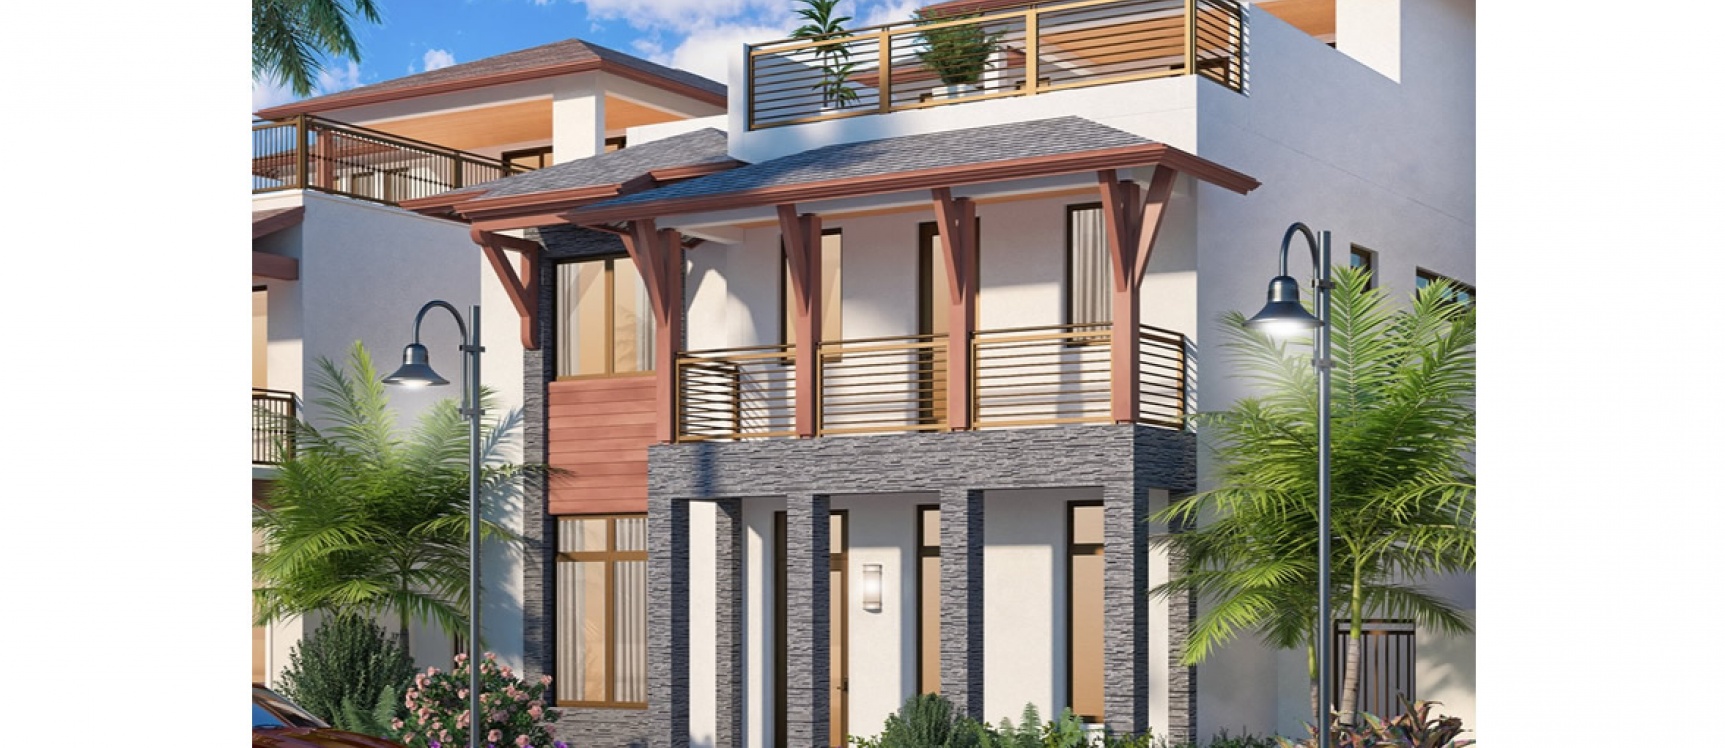 GeoBienes - Bali Collection Canarias Downtown Doral Miami - Plusvalia Guayaquil Casas de venta y alquiler Inmobiliaria Ecuador